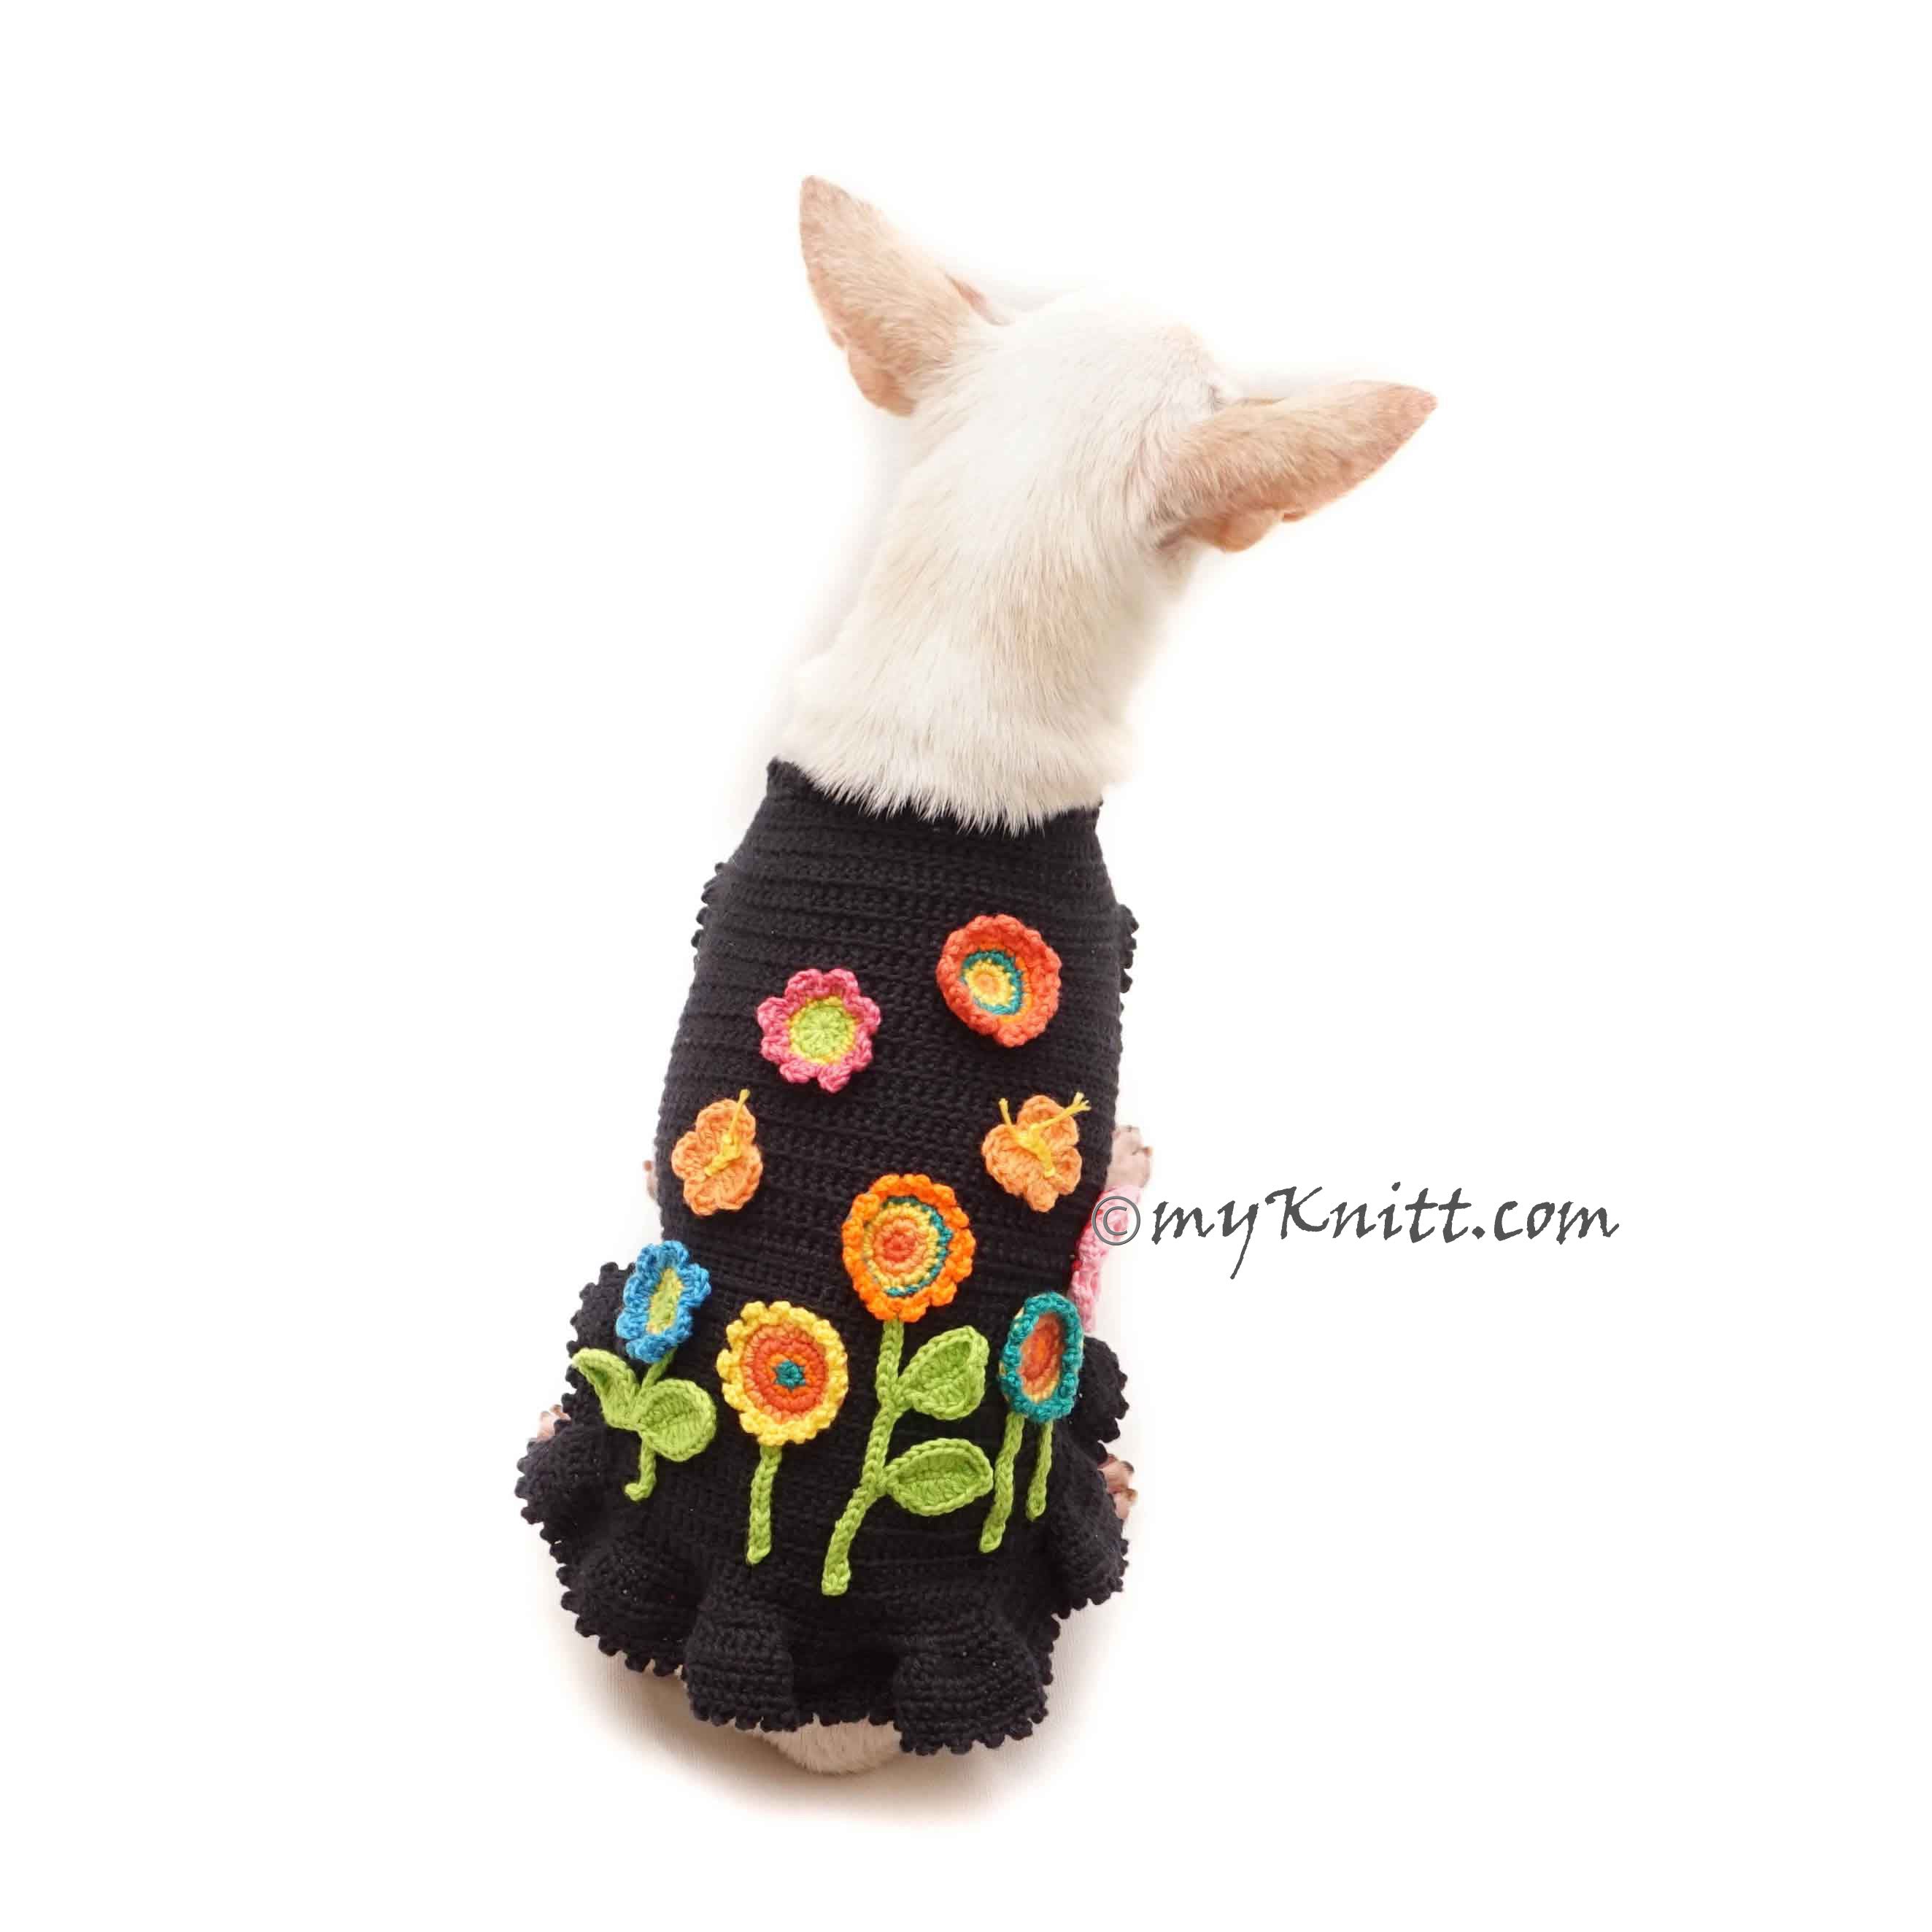 Flower Dog Dress Crochet, Black Dog Dress Flower Garden Crochet DF187 Myknitt